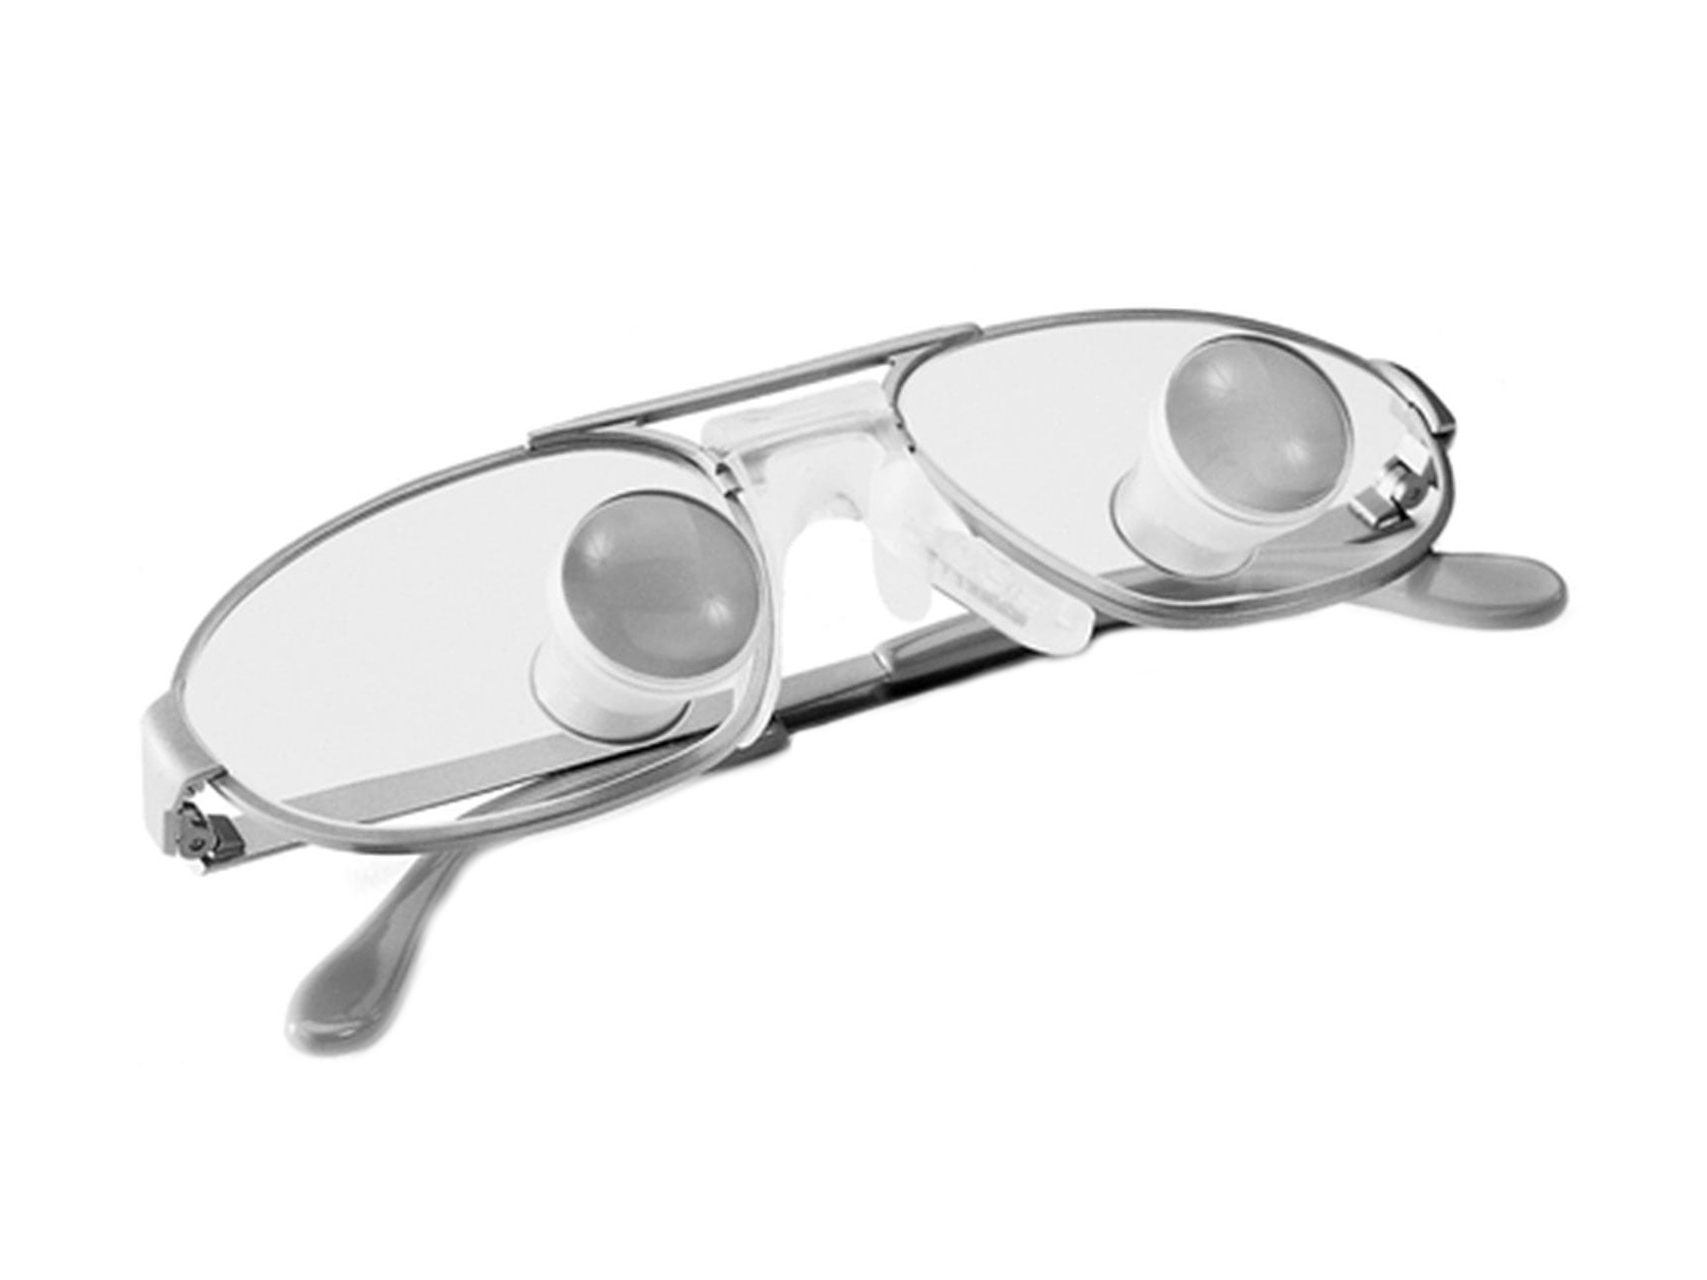 Szemüveglencsék pánttal és ZEISS telelupe szemüveg közvetlenül a lencsére szerelve.